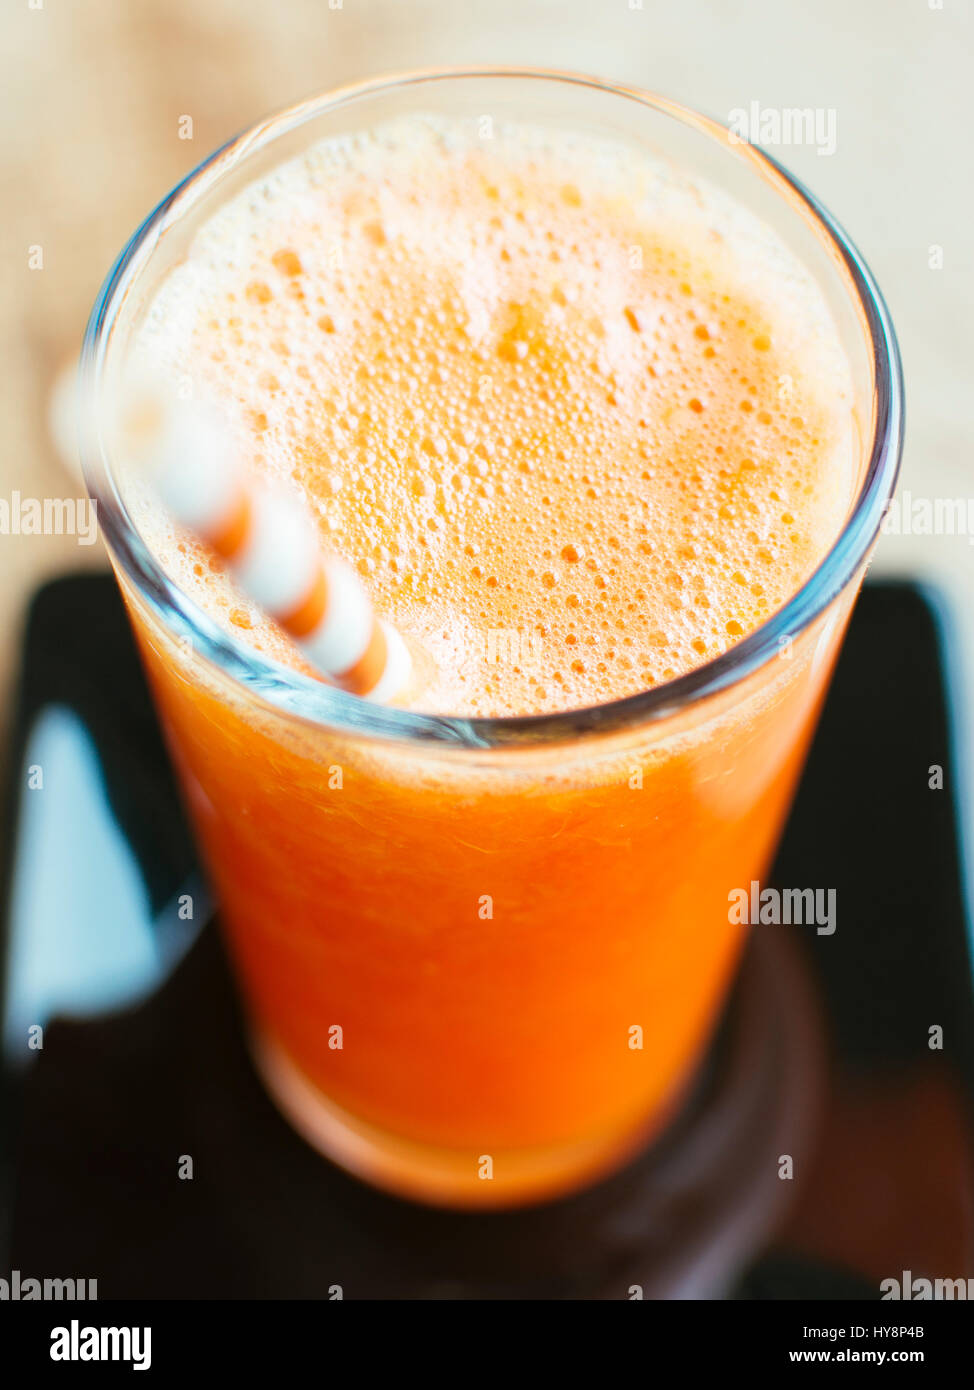 Carottes fraîches et jus d'orange dans un verre Banque D'Images